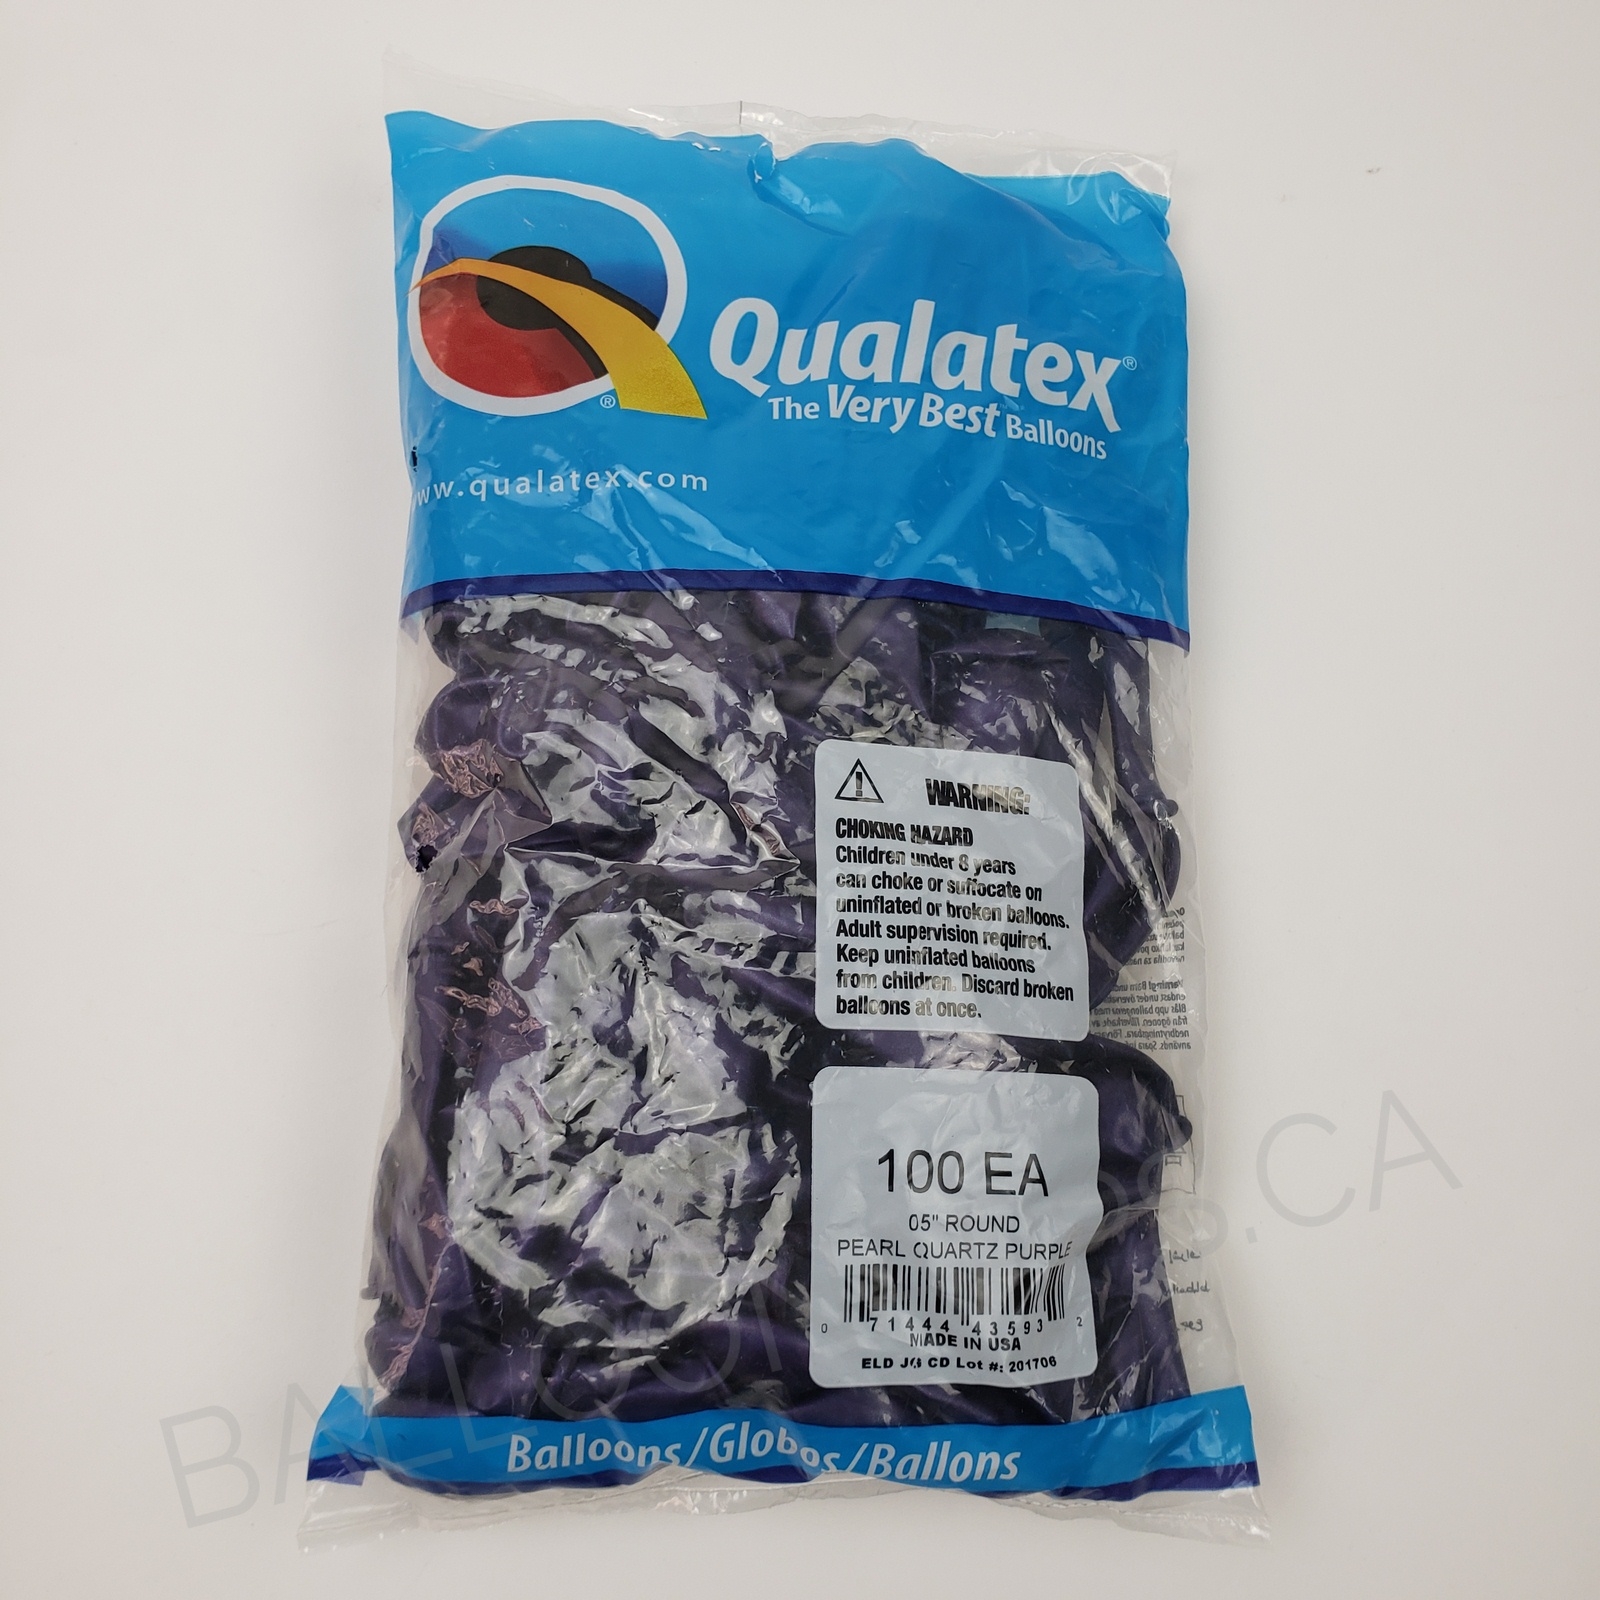 Q Pearl Quartz Purple balloons balloons - Qualatex Balloons supplier in ...